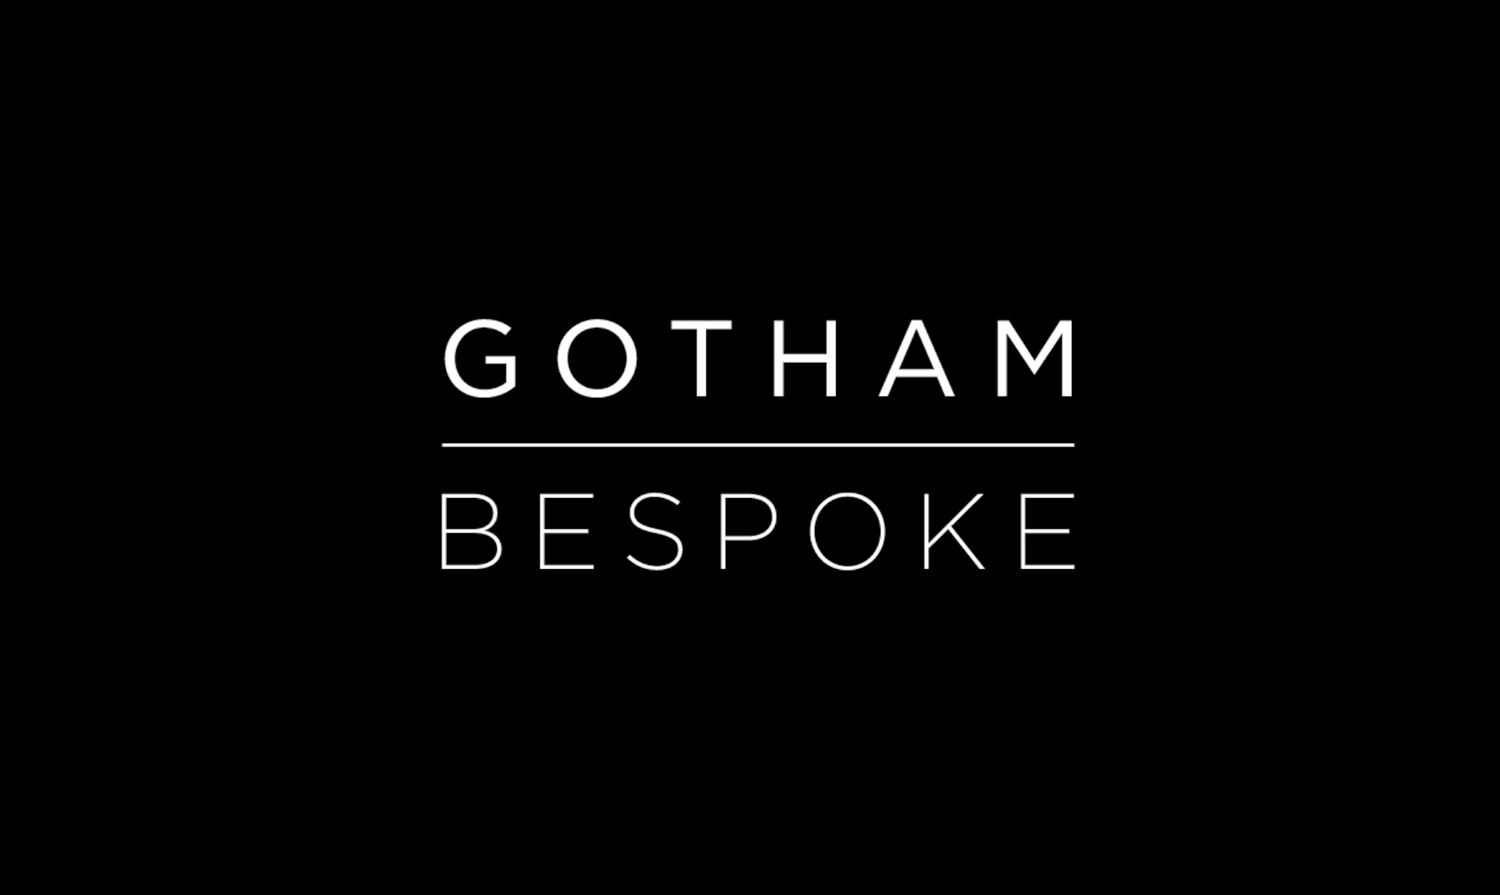 Gotham Bespoke Ltd